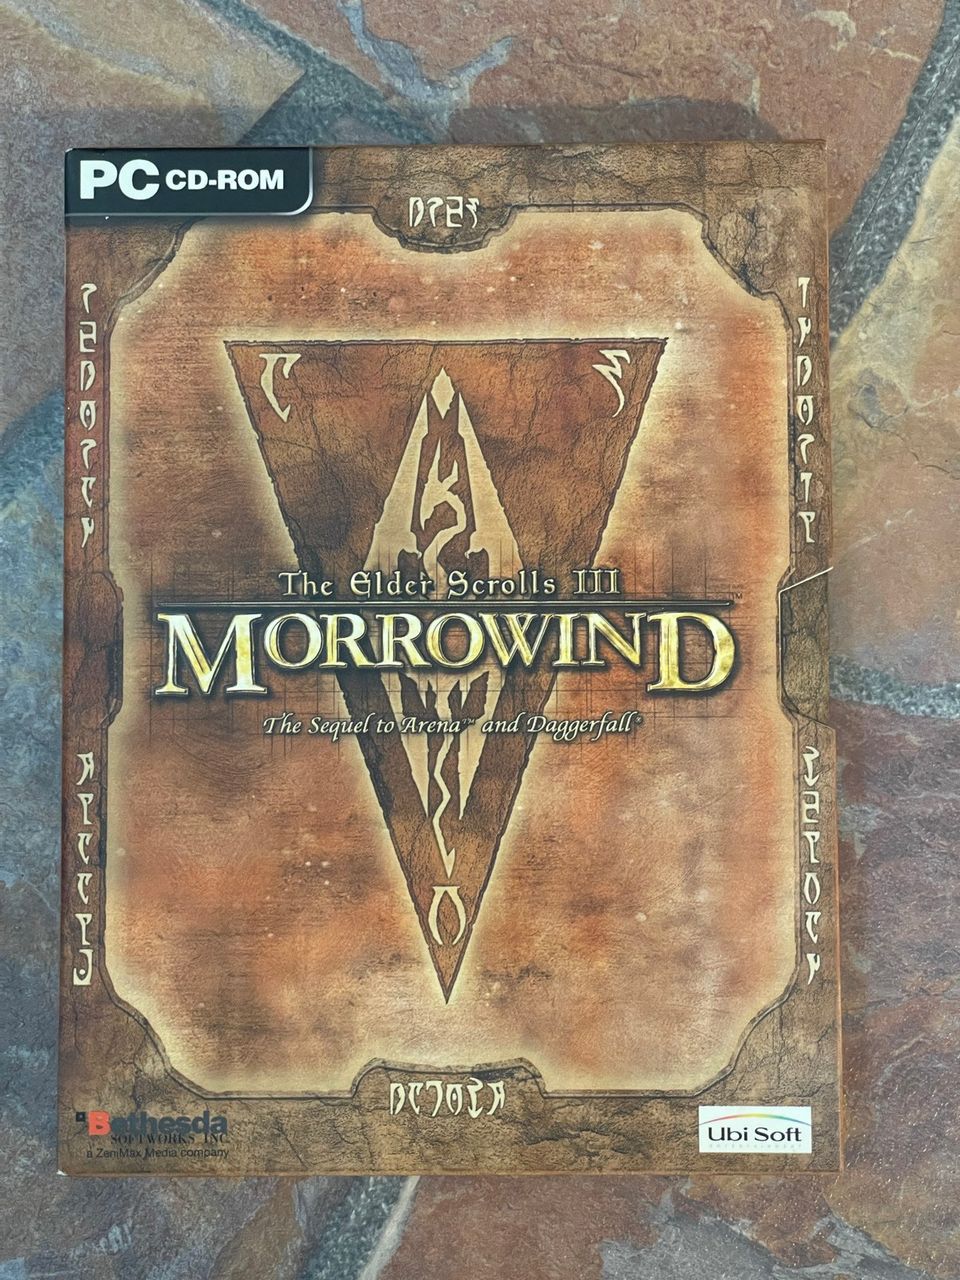 Elder scrolls 3, Morrowind